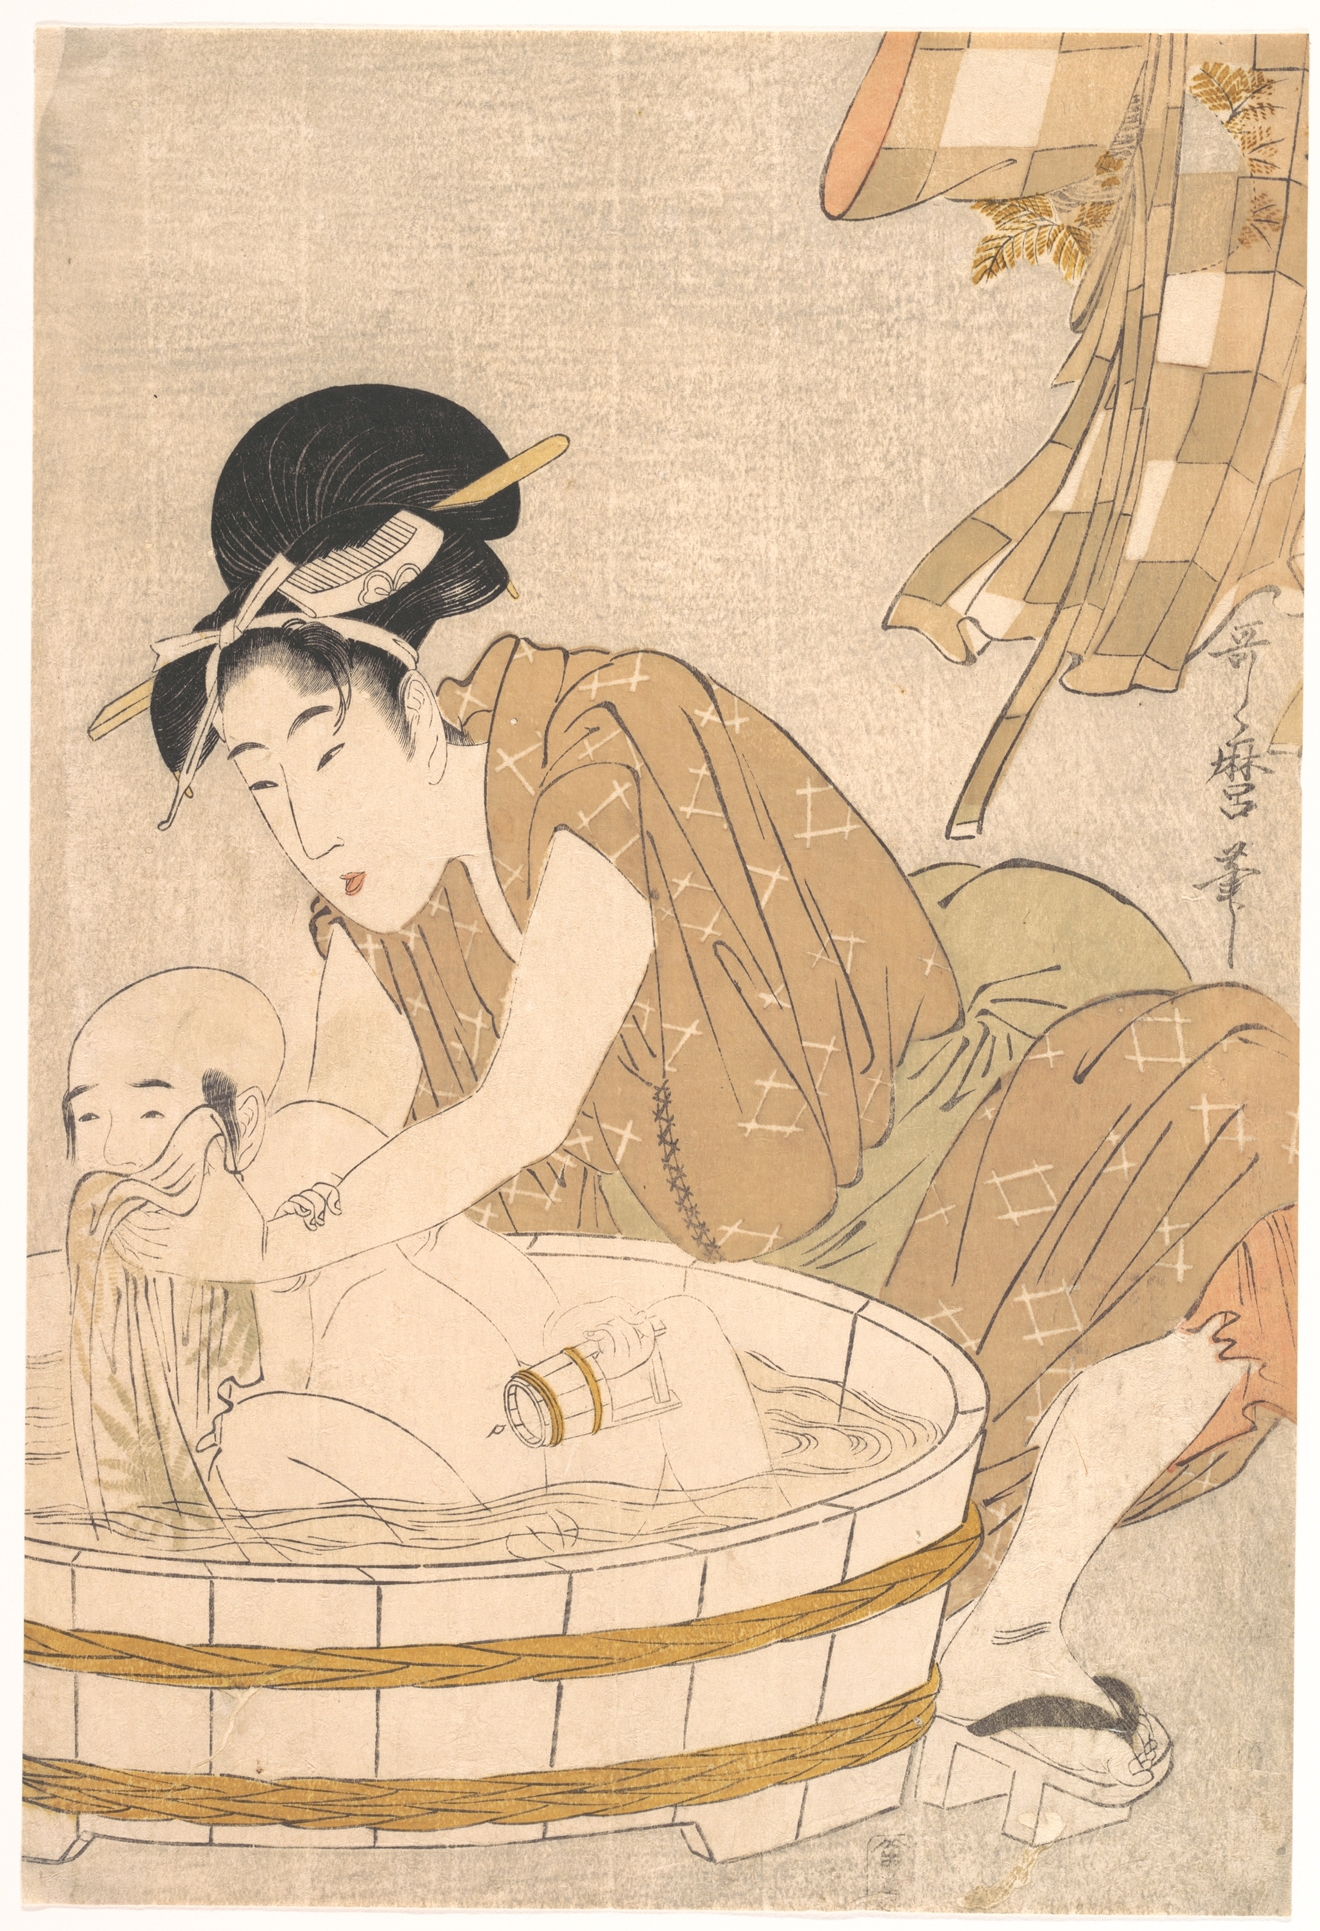 وقت الاستحمام by Kitagawa Utamaro - 1801 - الأبعاد: 37,3 × 25,1 سم 